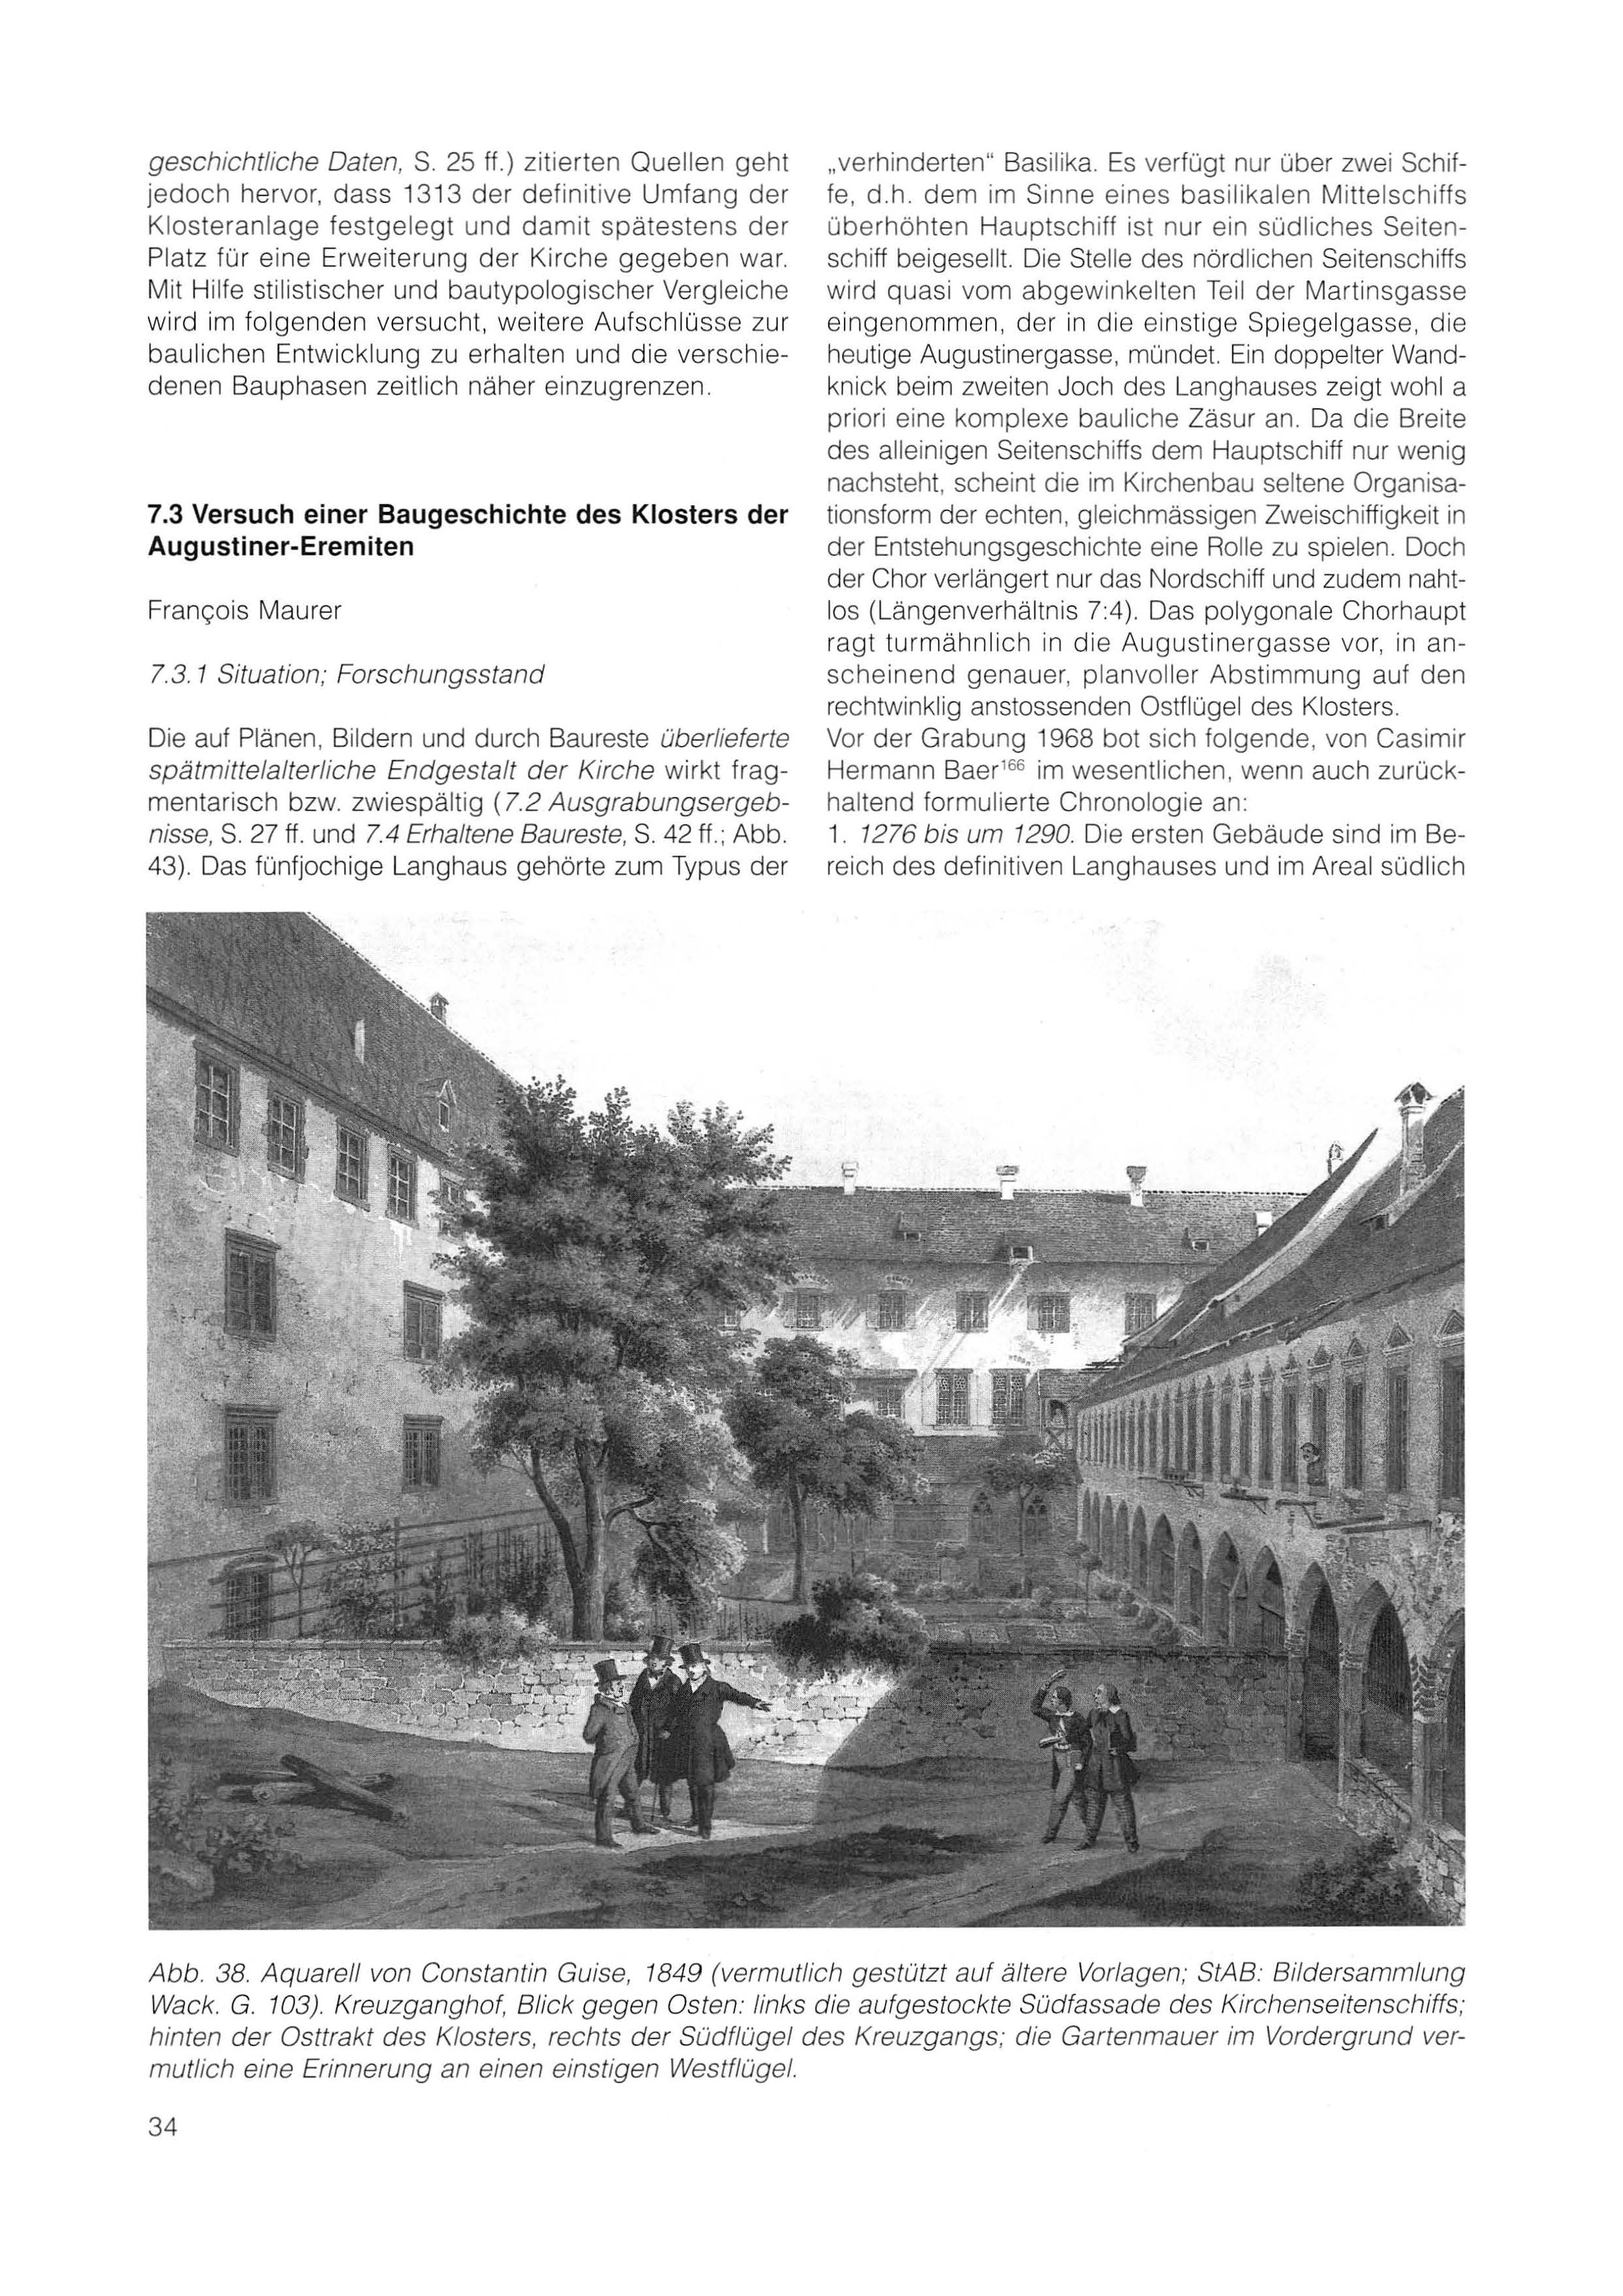 Erste Seite des Artikels über die Baugeschichte des Augustinerklosters